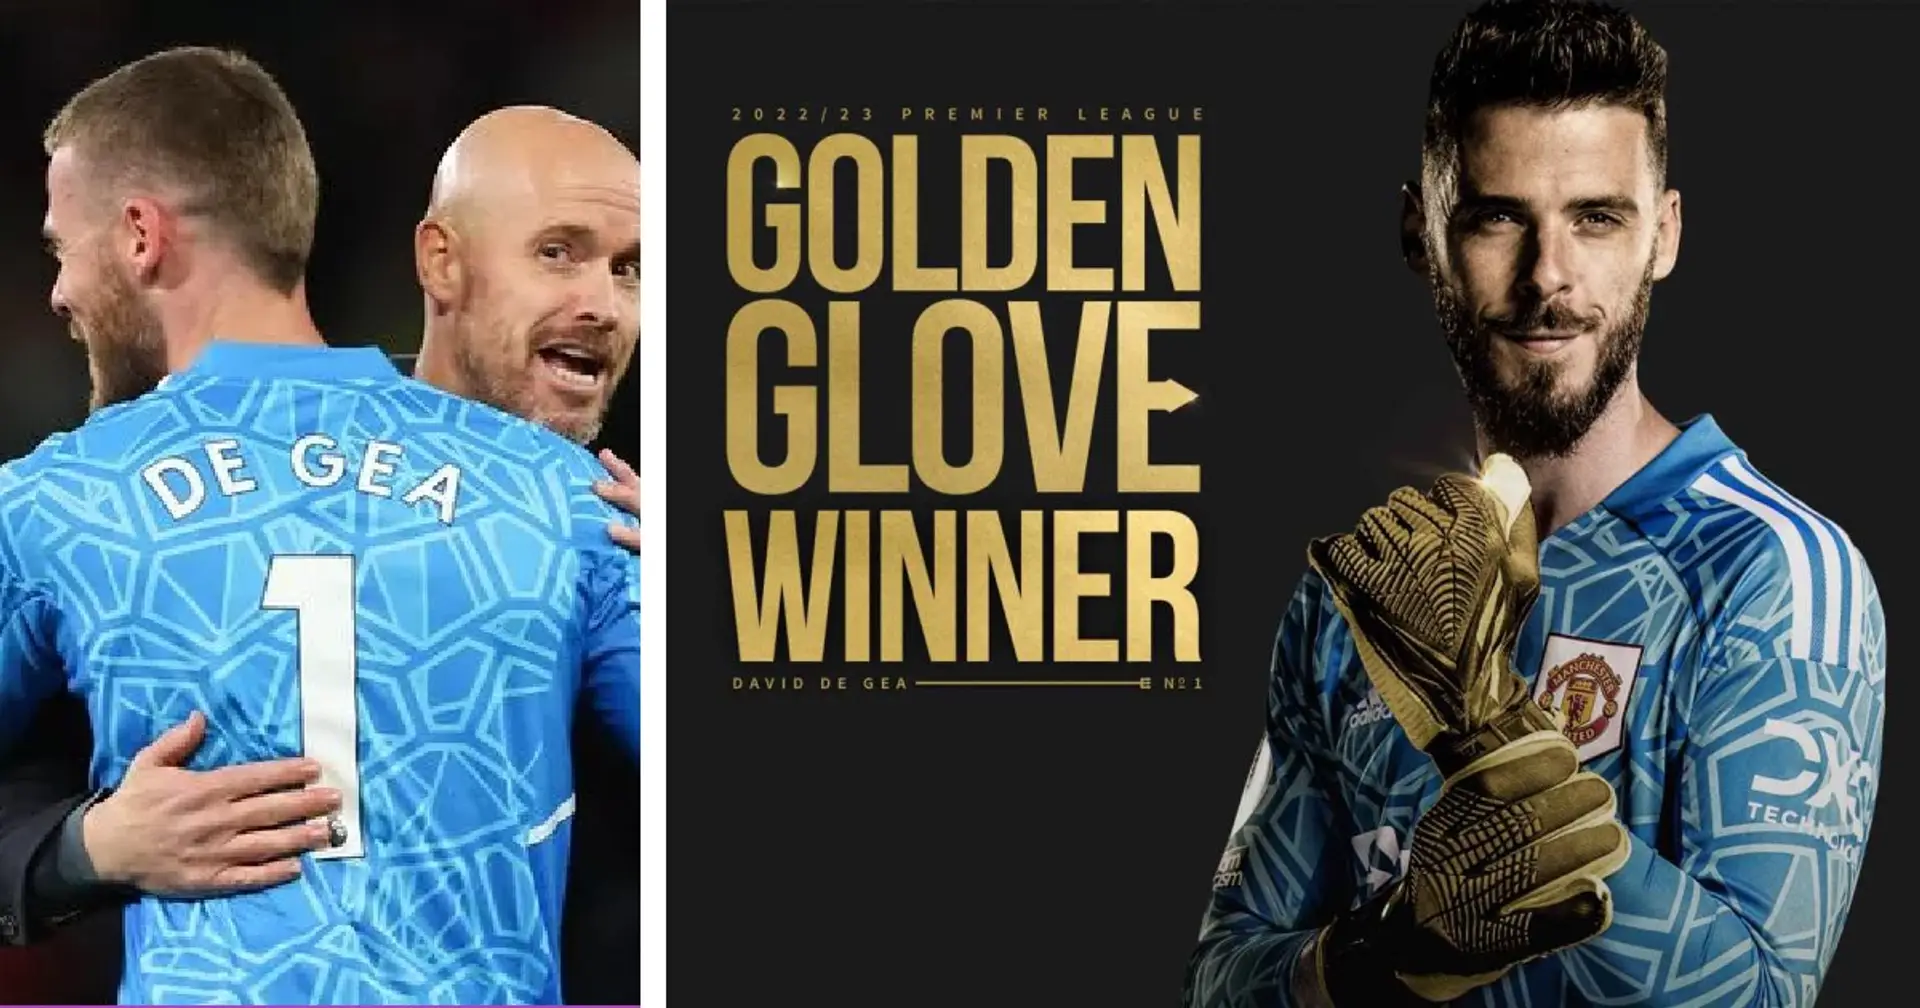 'We have a top goalkeeper': Ten Hag reacts to De Gea winning Golden Glove 